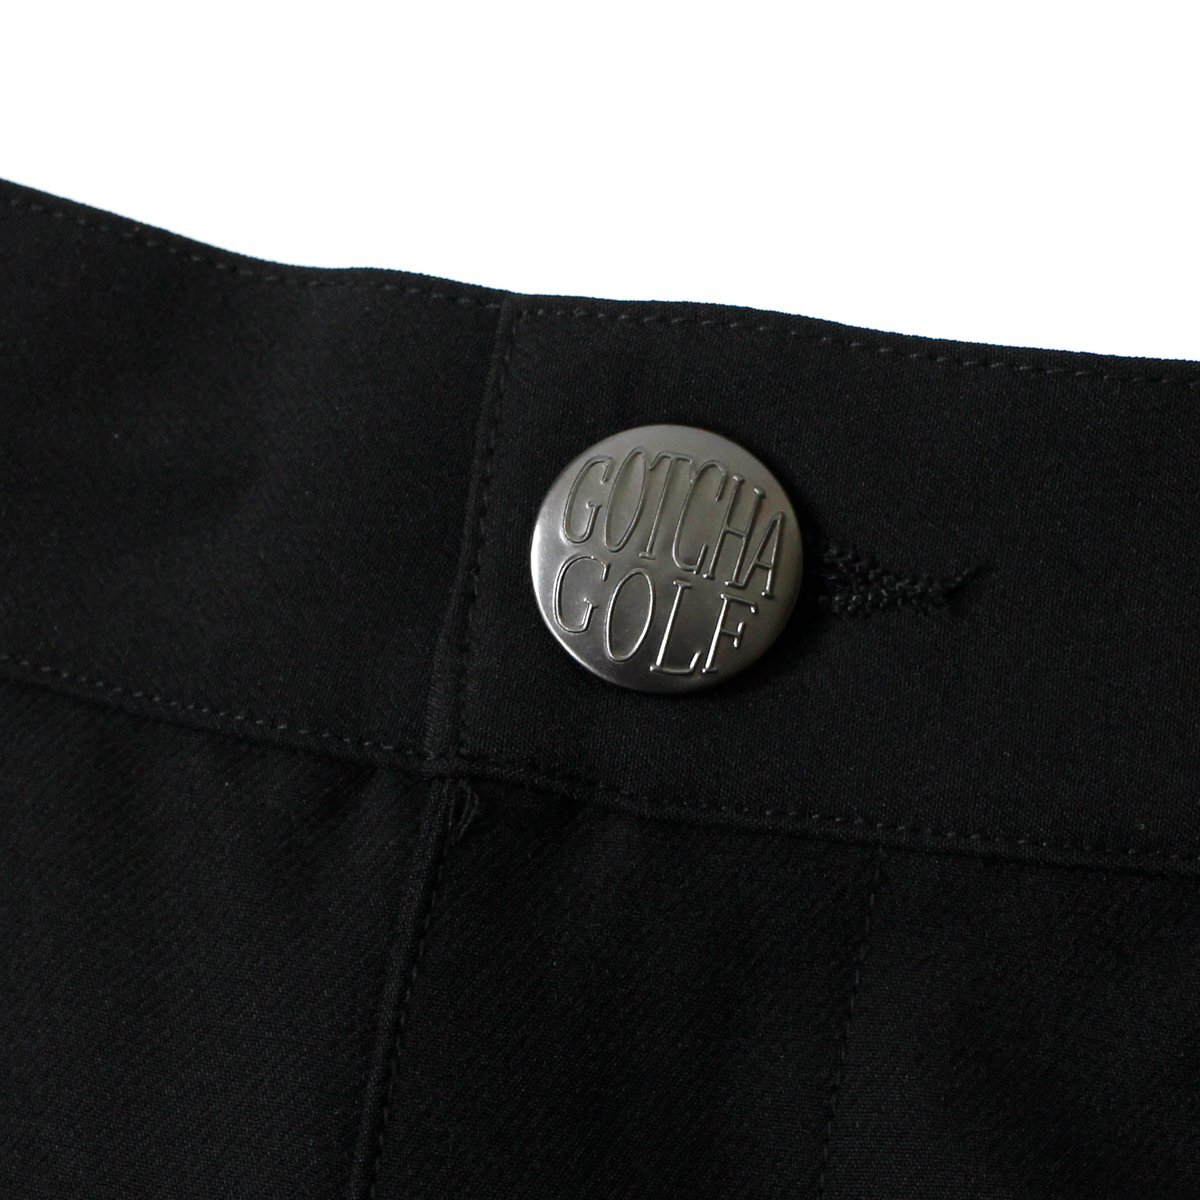  новый товар Gotcha Golf 4way стрейч водоотталкивающий длинные брюки XXL весна лето GOTCHA GOLF низ мужской одежда .. вышивка чёрный *CG2313C